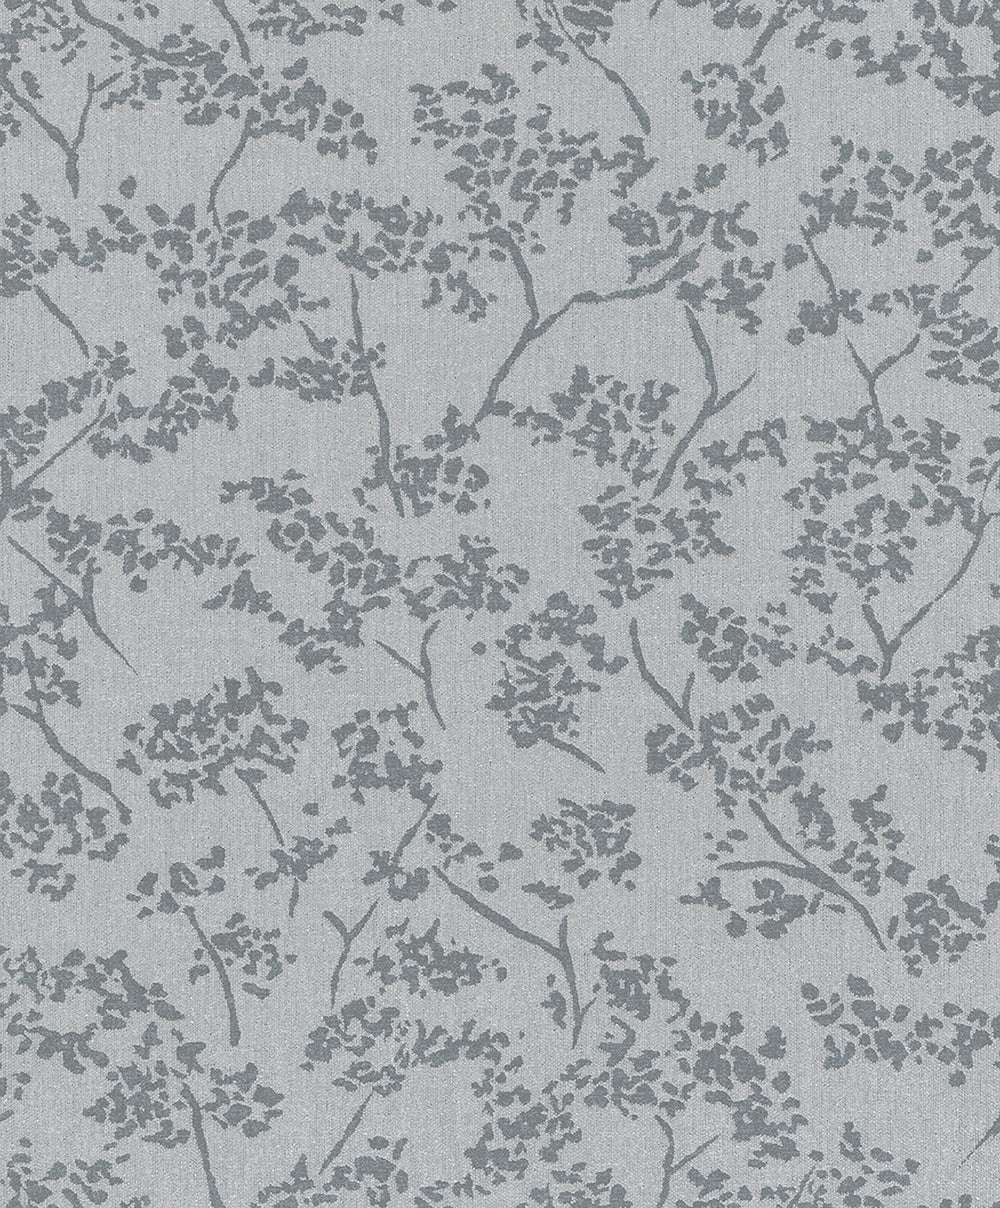 Schoner Wohnen New Spirit - Vintage Floral botanical wallpaper Marburg Roll Dark Grey  32705